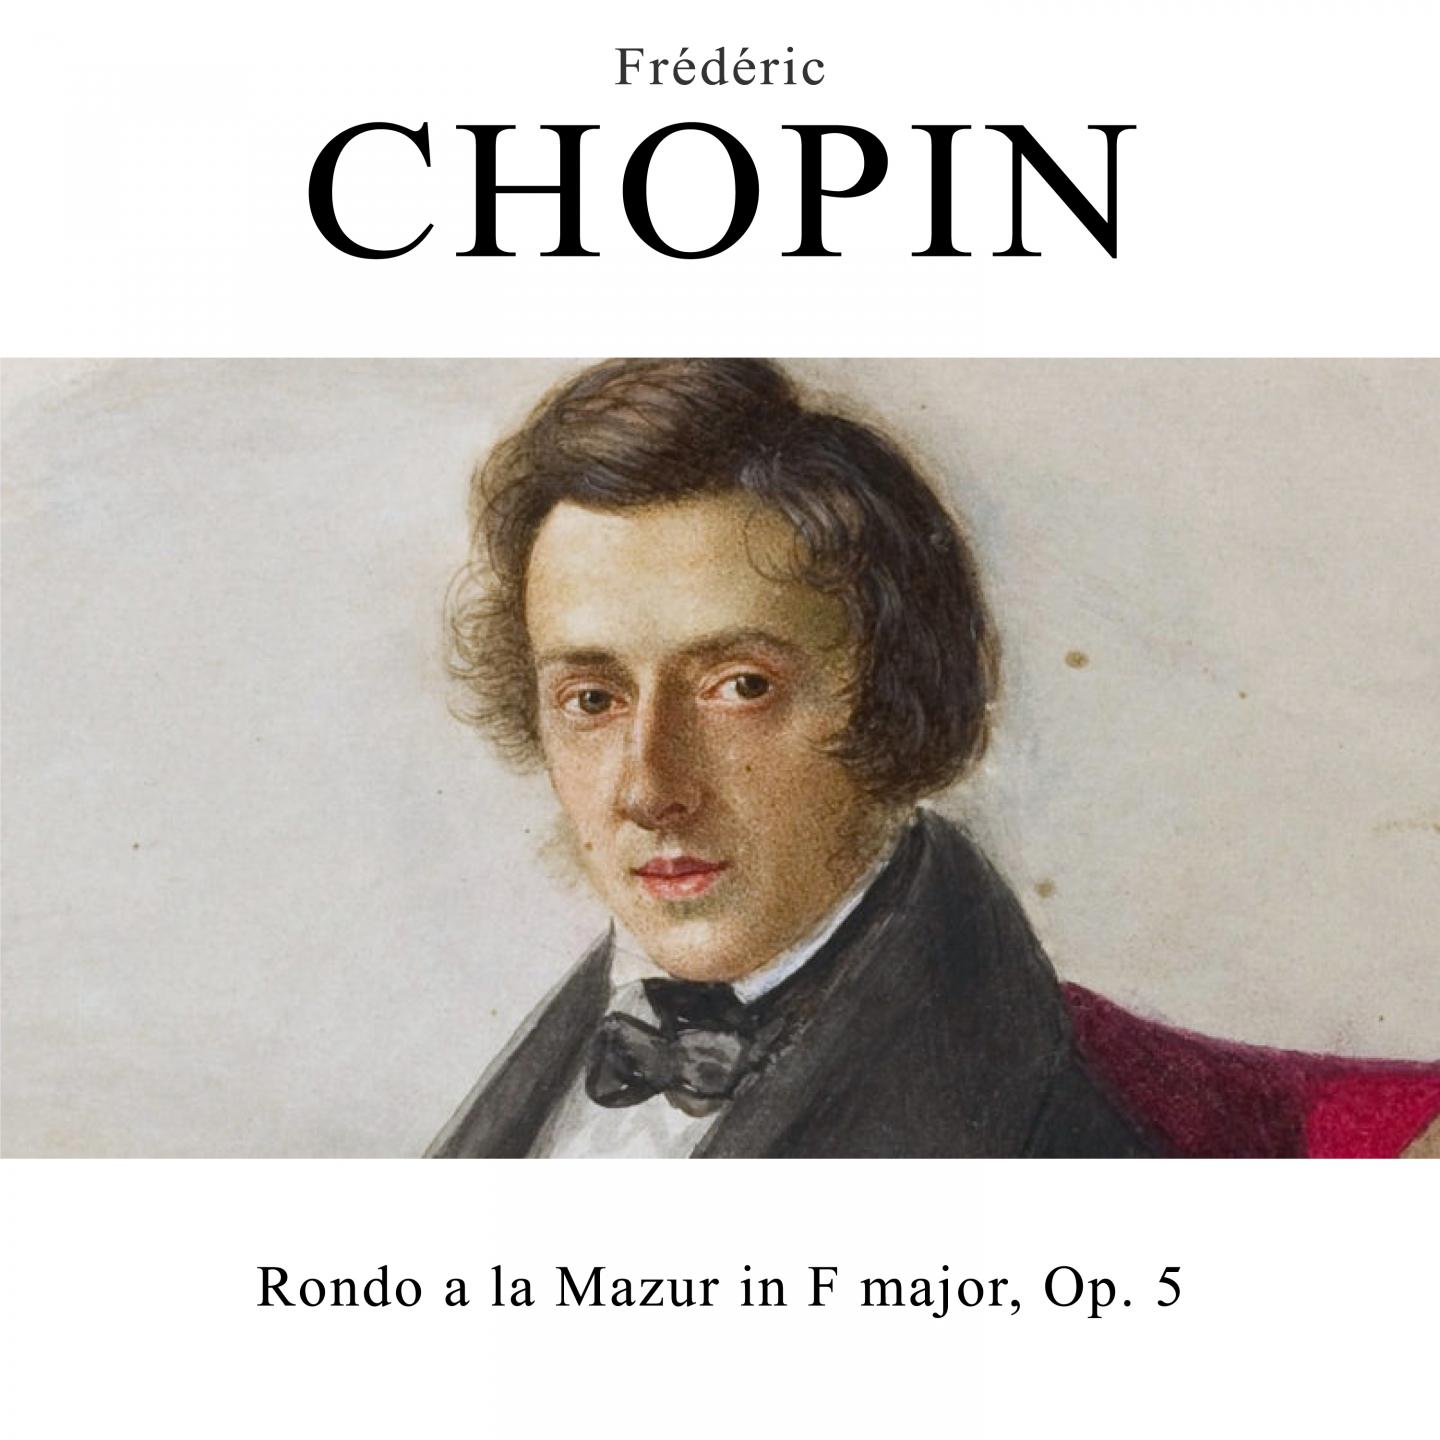 Rondo a la Mazur, Op. 5 in F Major